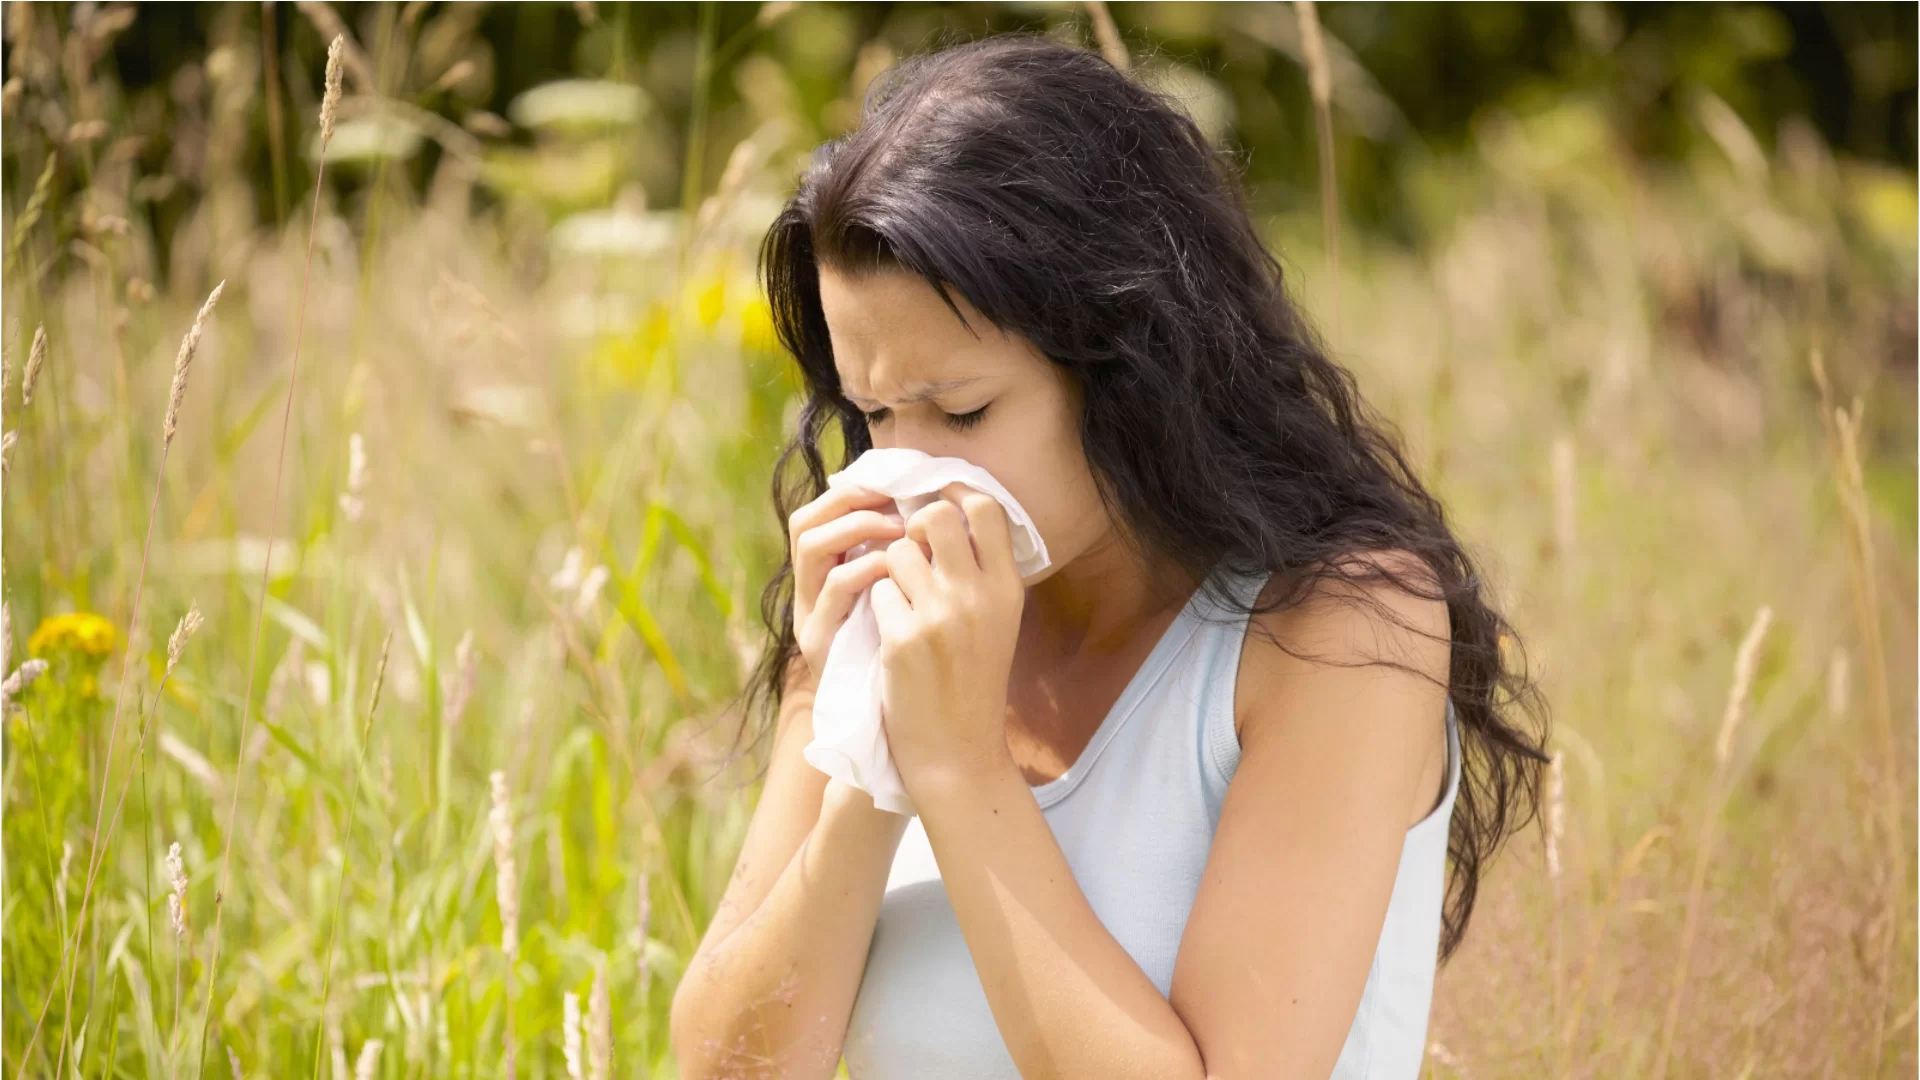 Polen y smog: las reglas para protegerse de las alergias